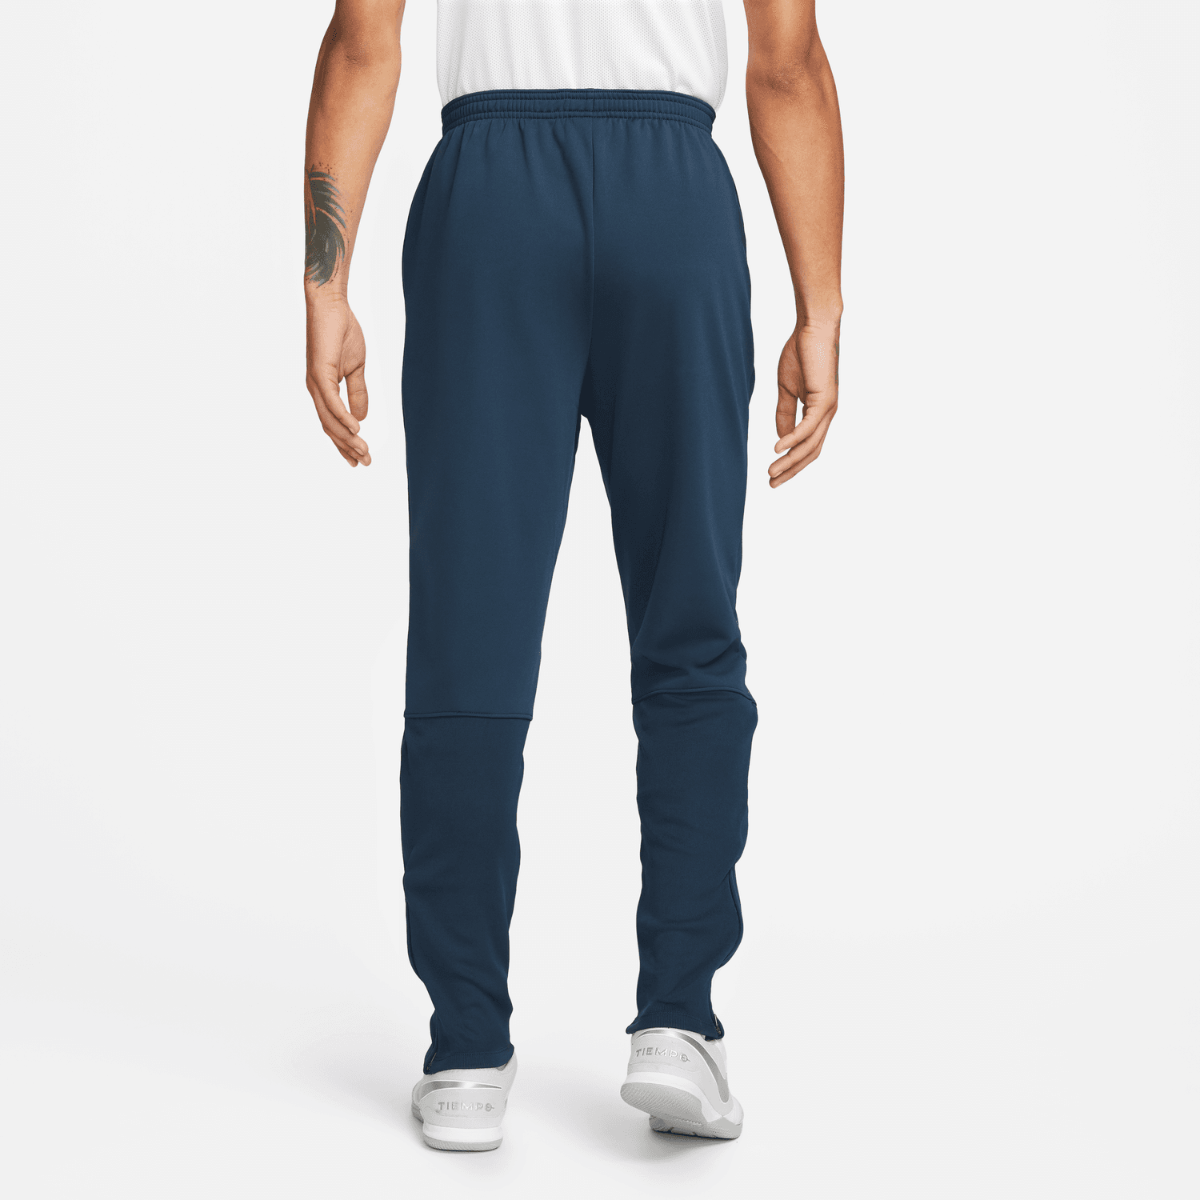 Pantalon Nike Therma-Fit Academy - Bleu/Blanc